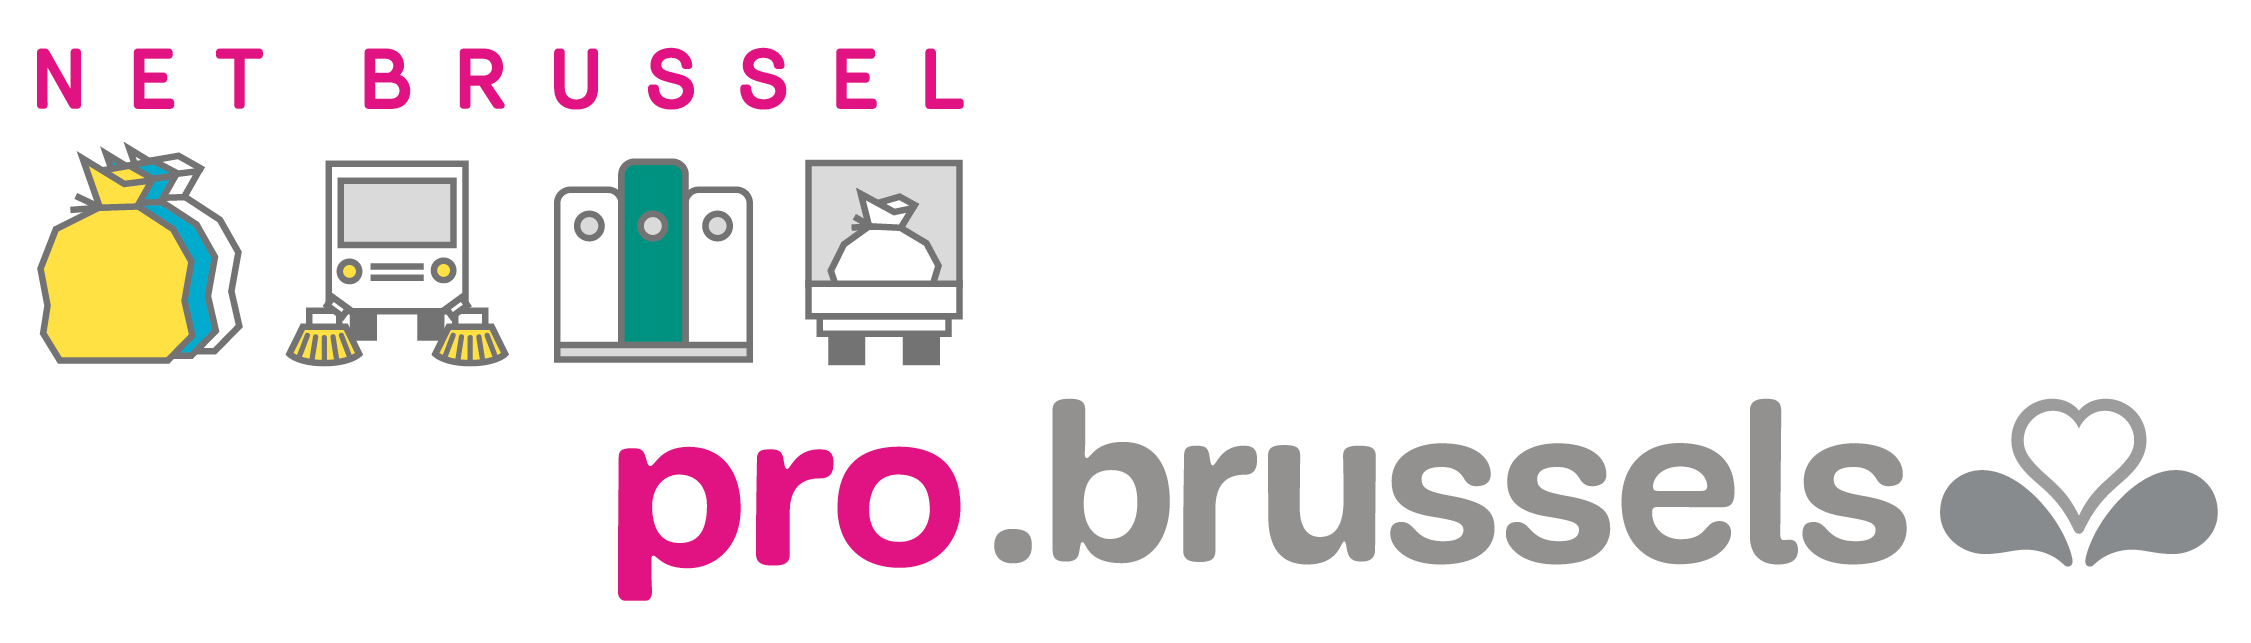 Home Net Brussel pro.brussels